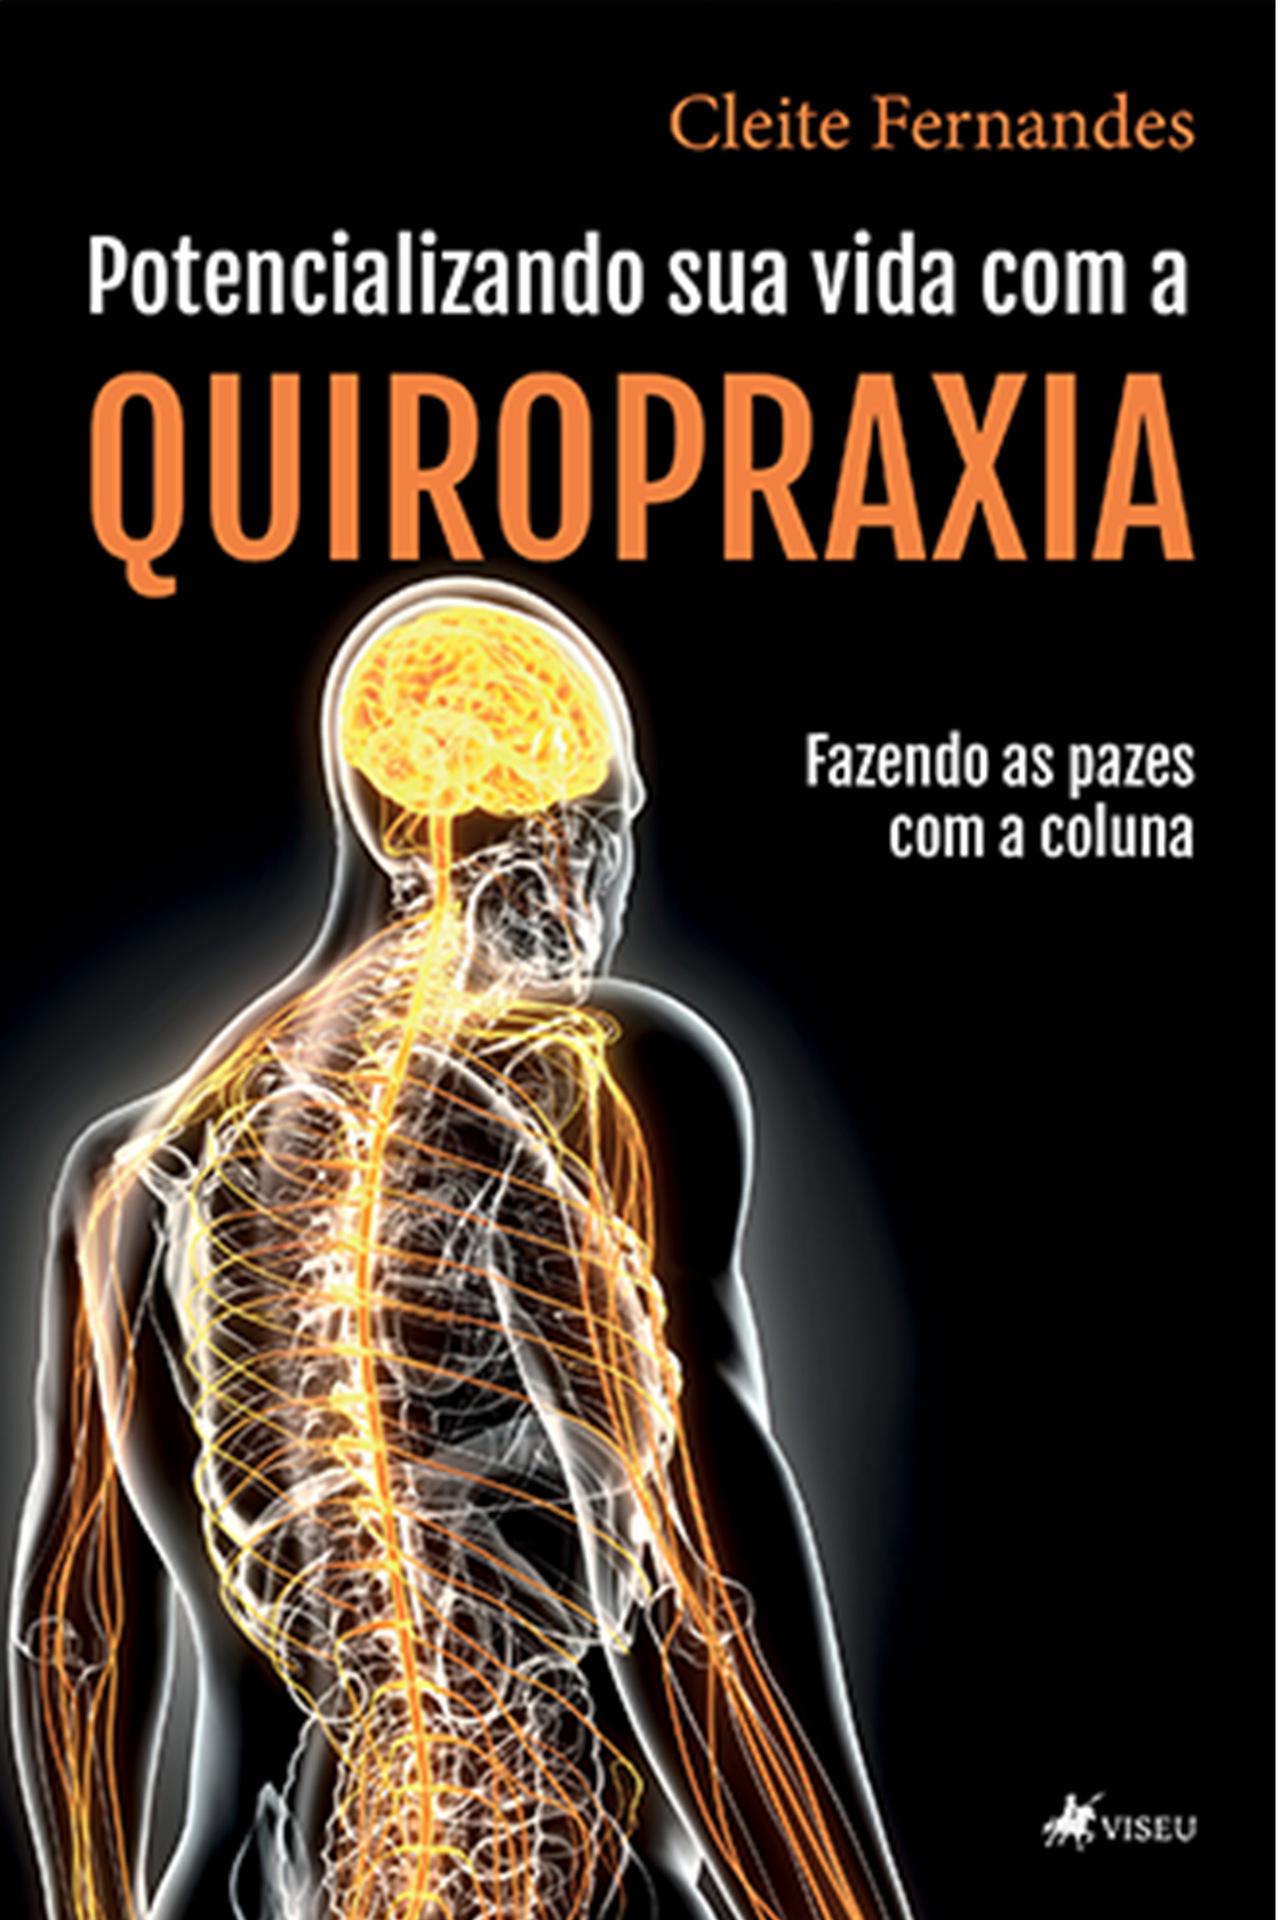 Potencializando sua vida com a Quiropraxia: fazendo as pazes com a coluna